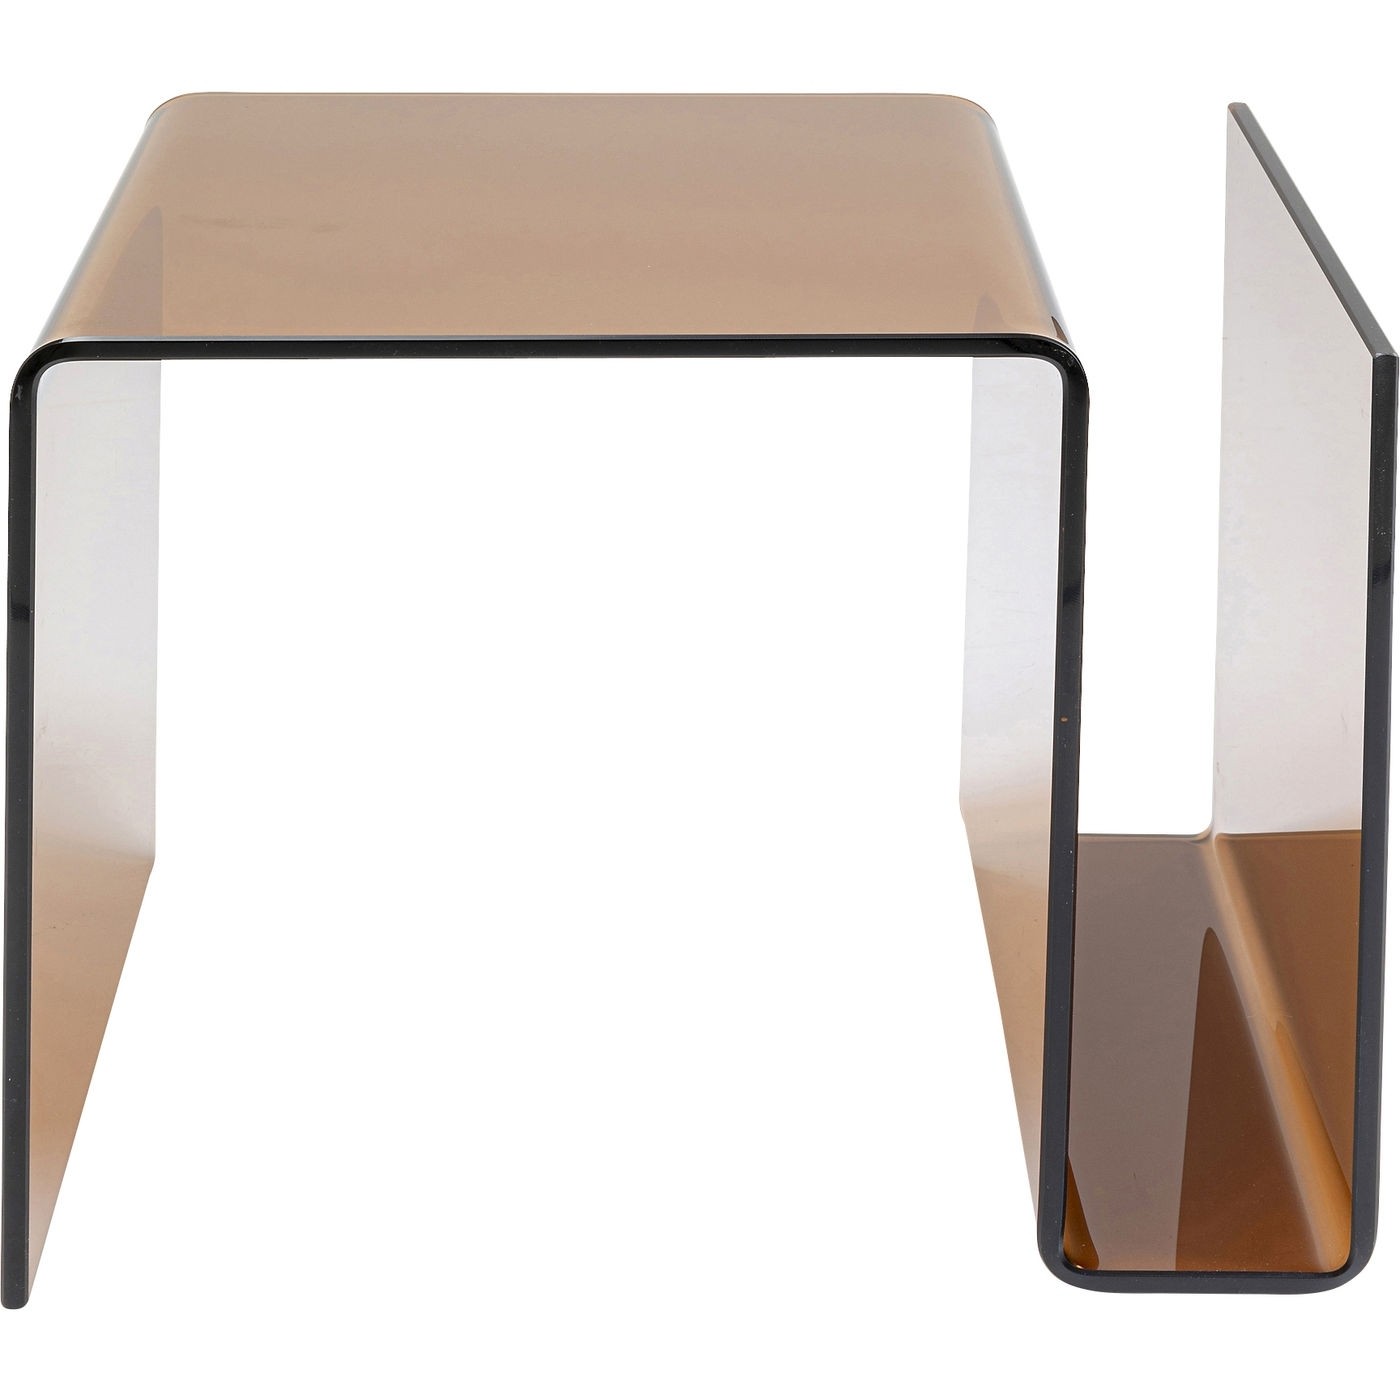 KARE DESIGN Visible Amber sidebord, m. magasinholder - ravfarvet glas (48x38) sideborde - BOBO - Møbler, boligtilbehør og indretning til hjemmet